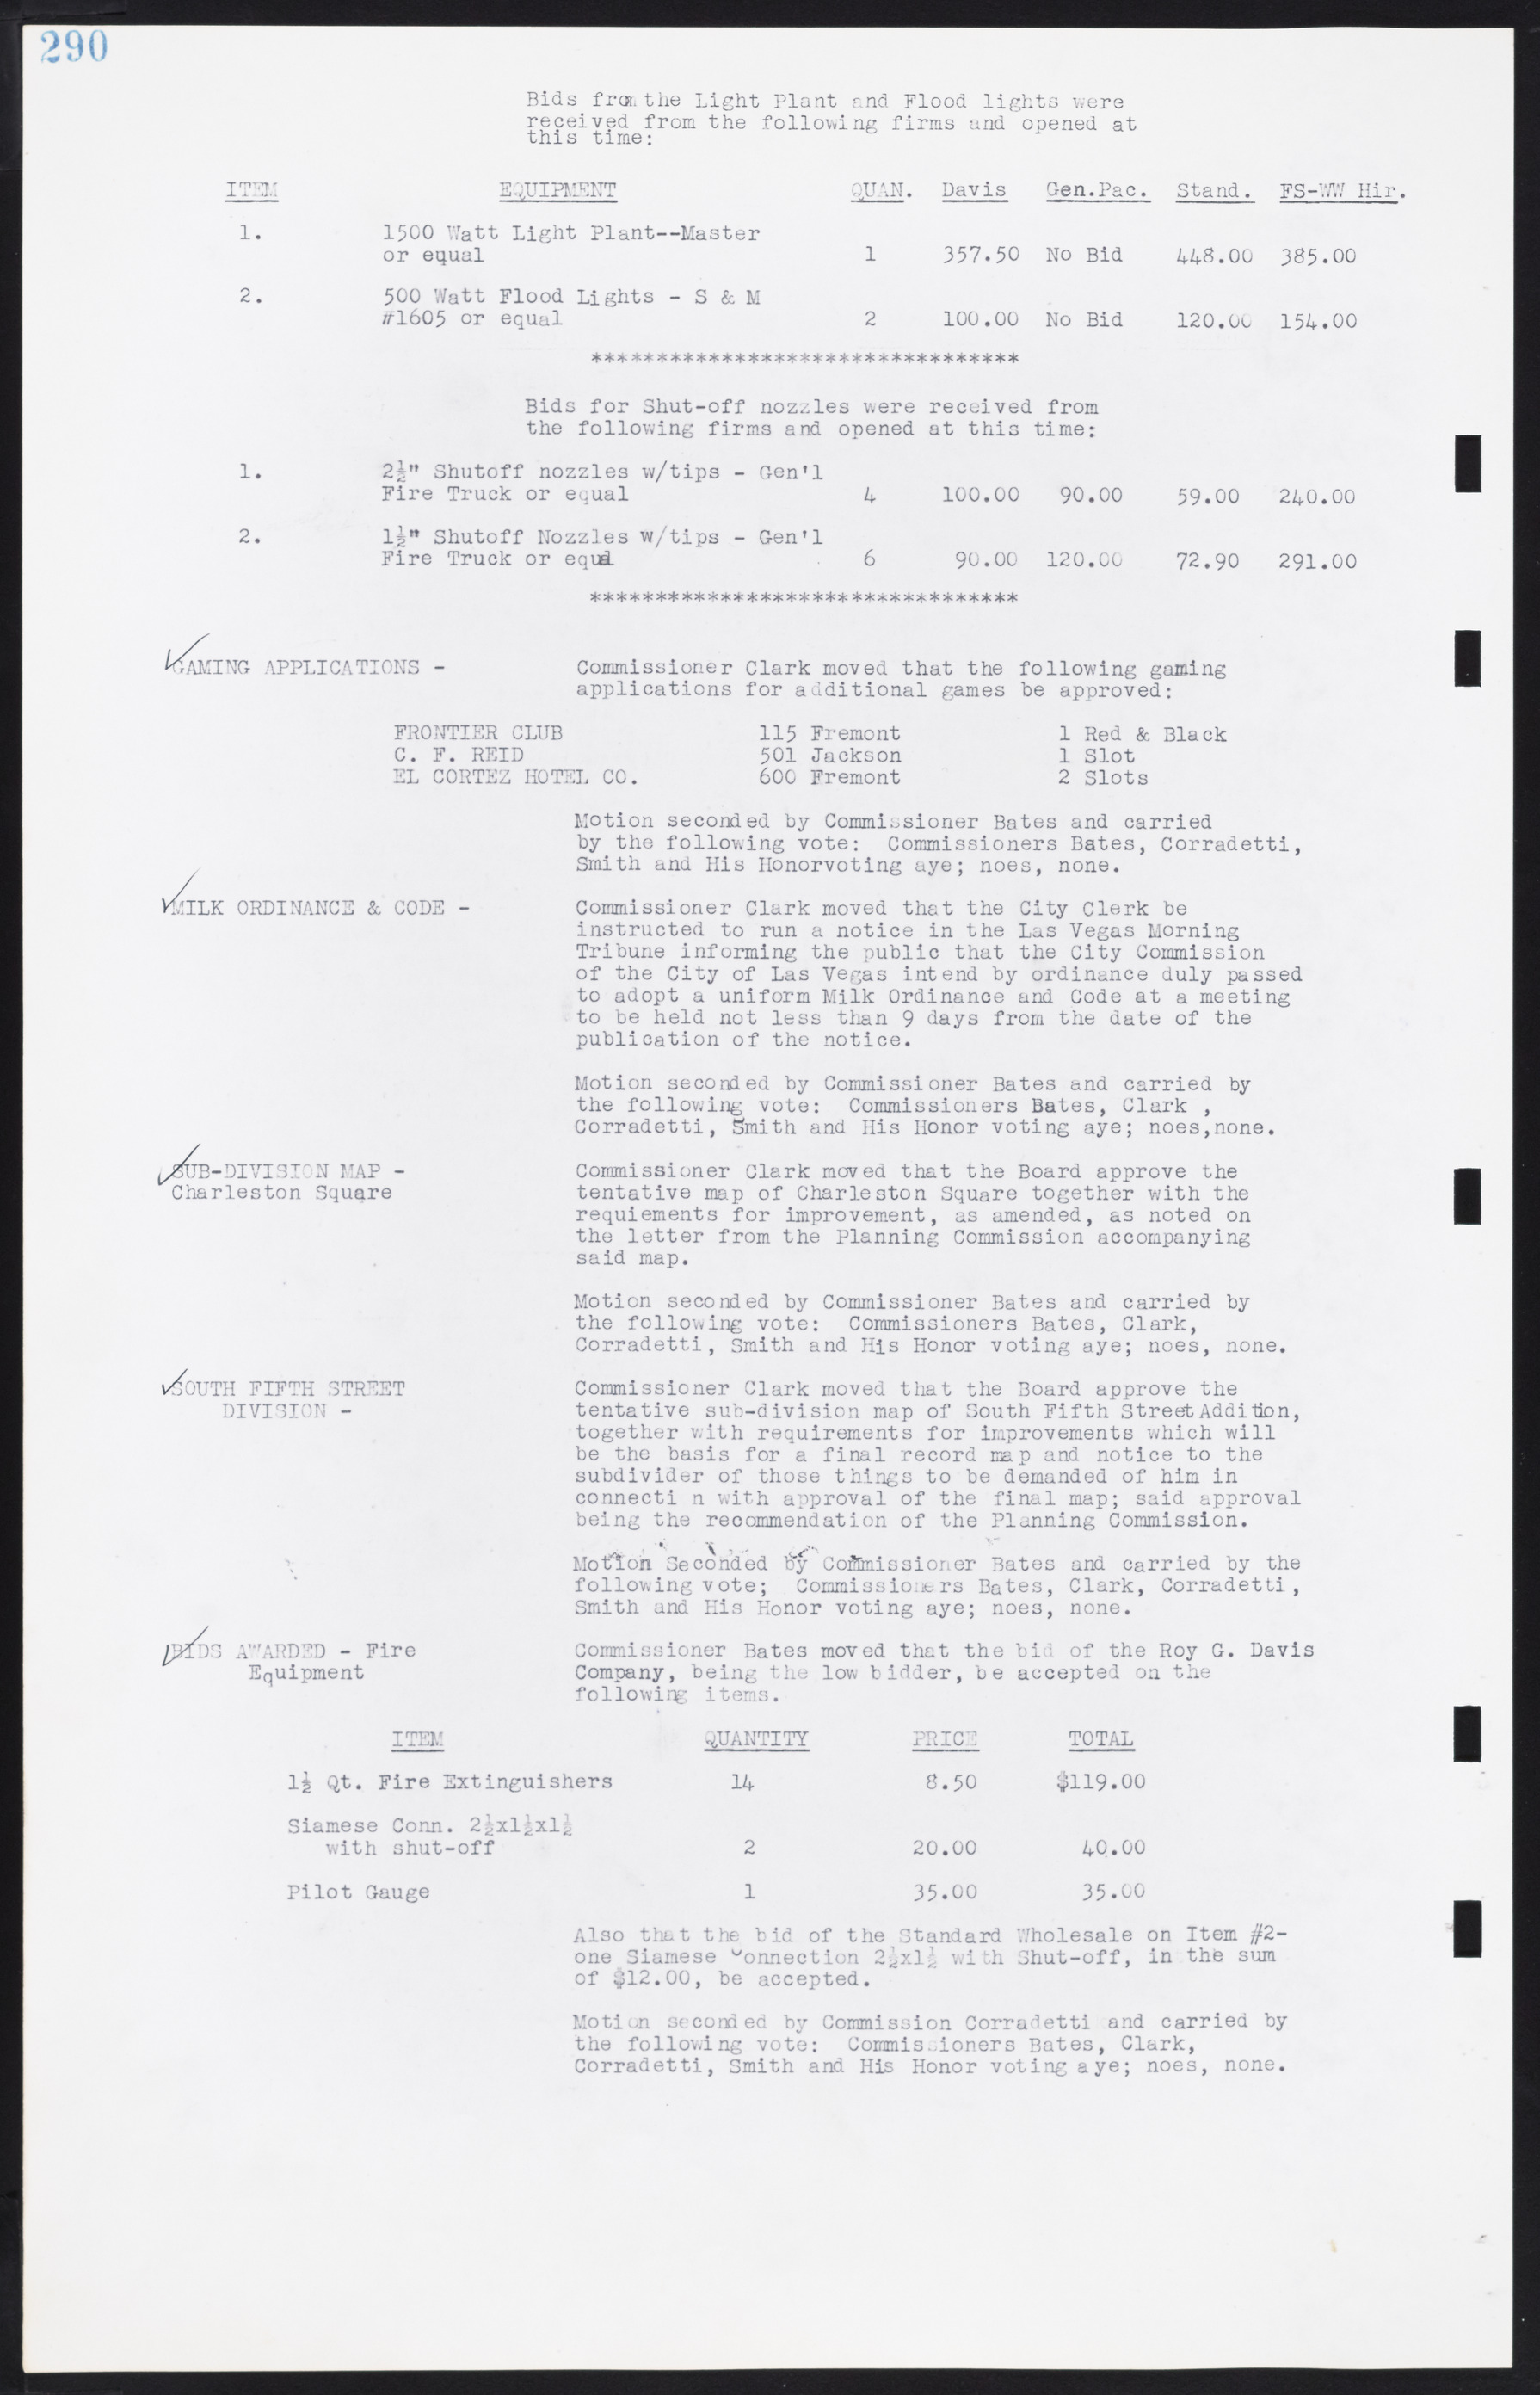 Las Vegas City Commission Minutes, August 11, 1942 to December 30, 1946, lvc000005-312